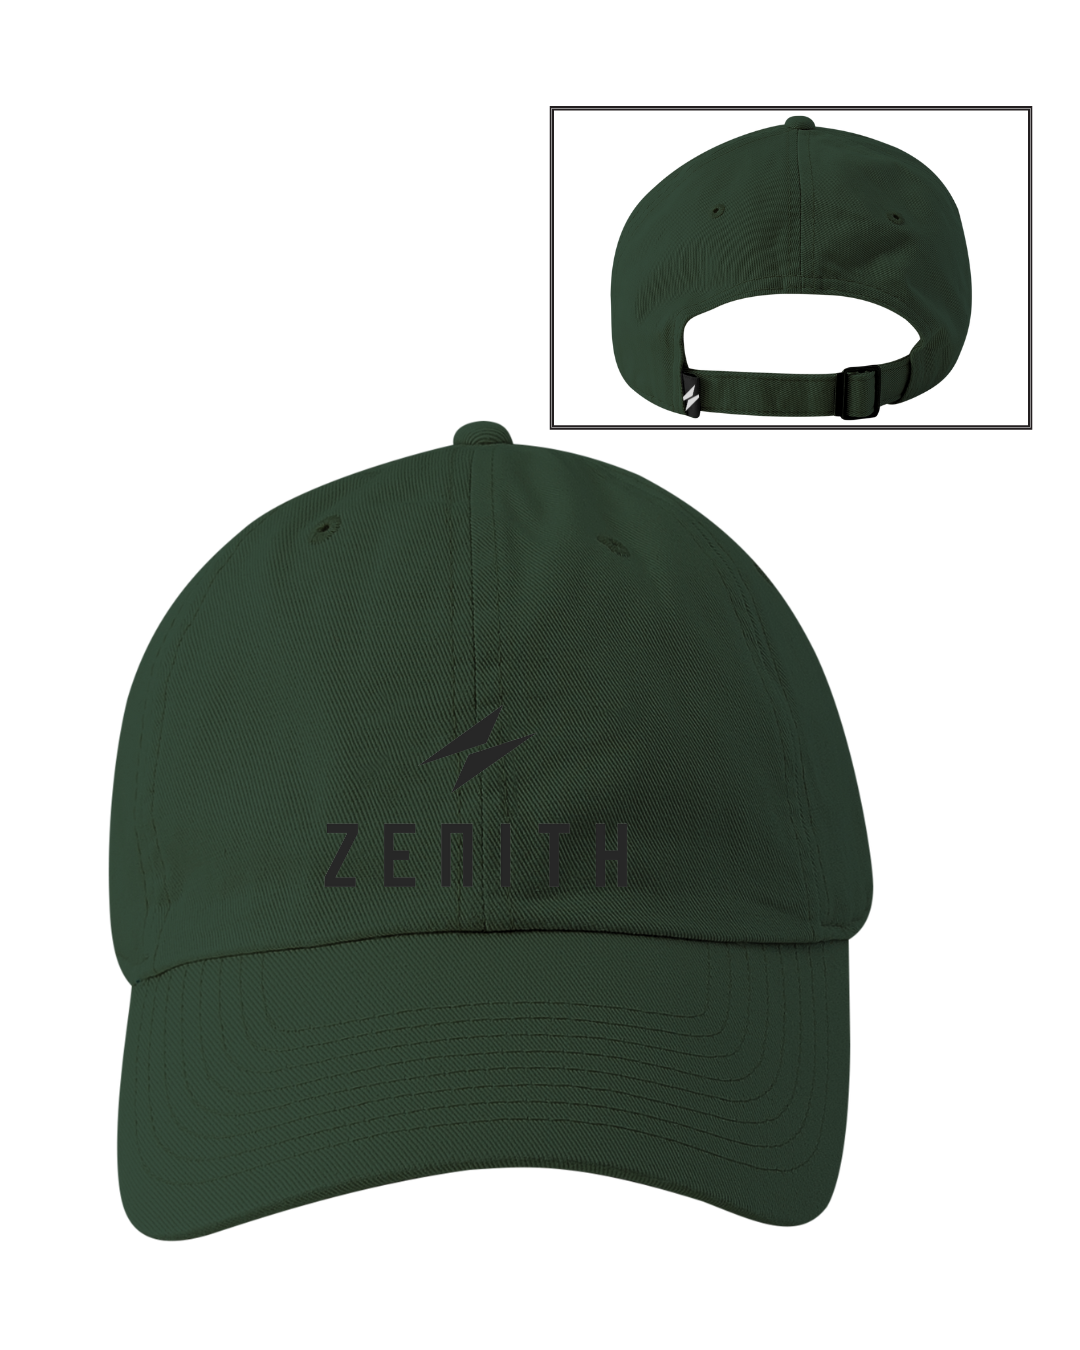 ZENITH Dad Hat